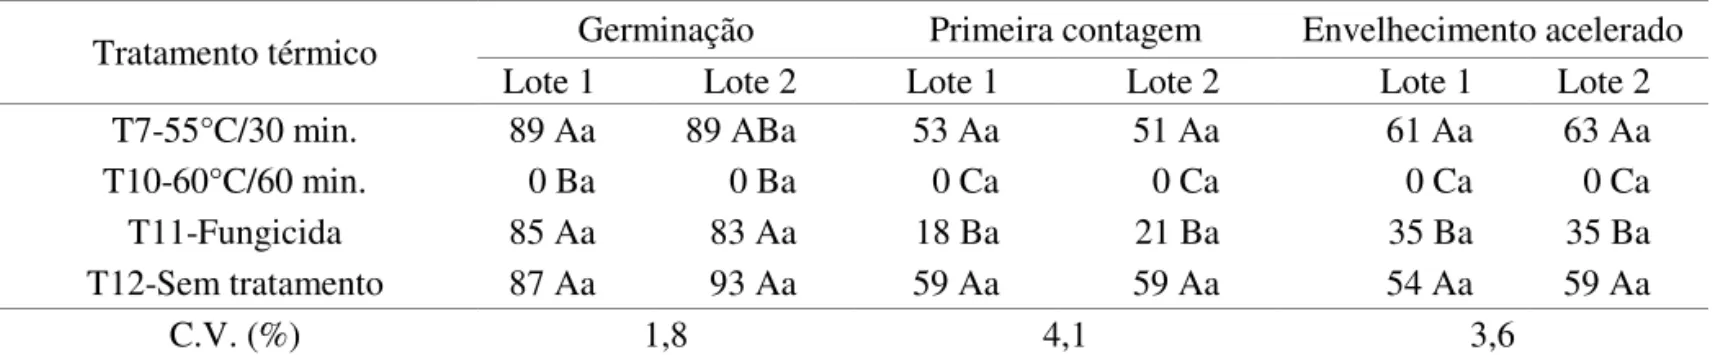 TABELA 8. Germinação (%), primeira contagem de germinação (%) e envelhecimento acelerado (%) dos lotes 1 e 2  do cultivar de tomate UC-82, após tratamento térmico no experimento II.